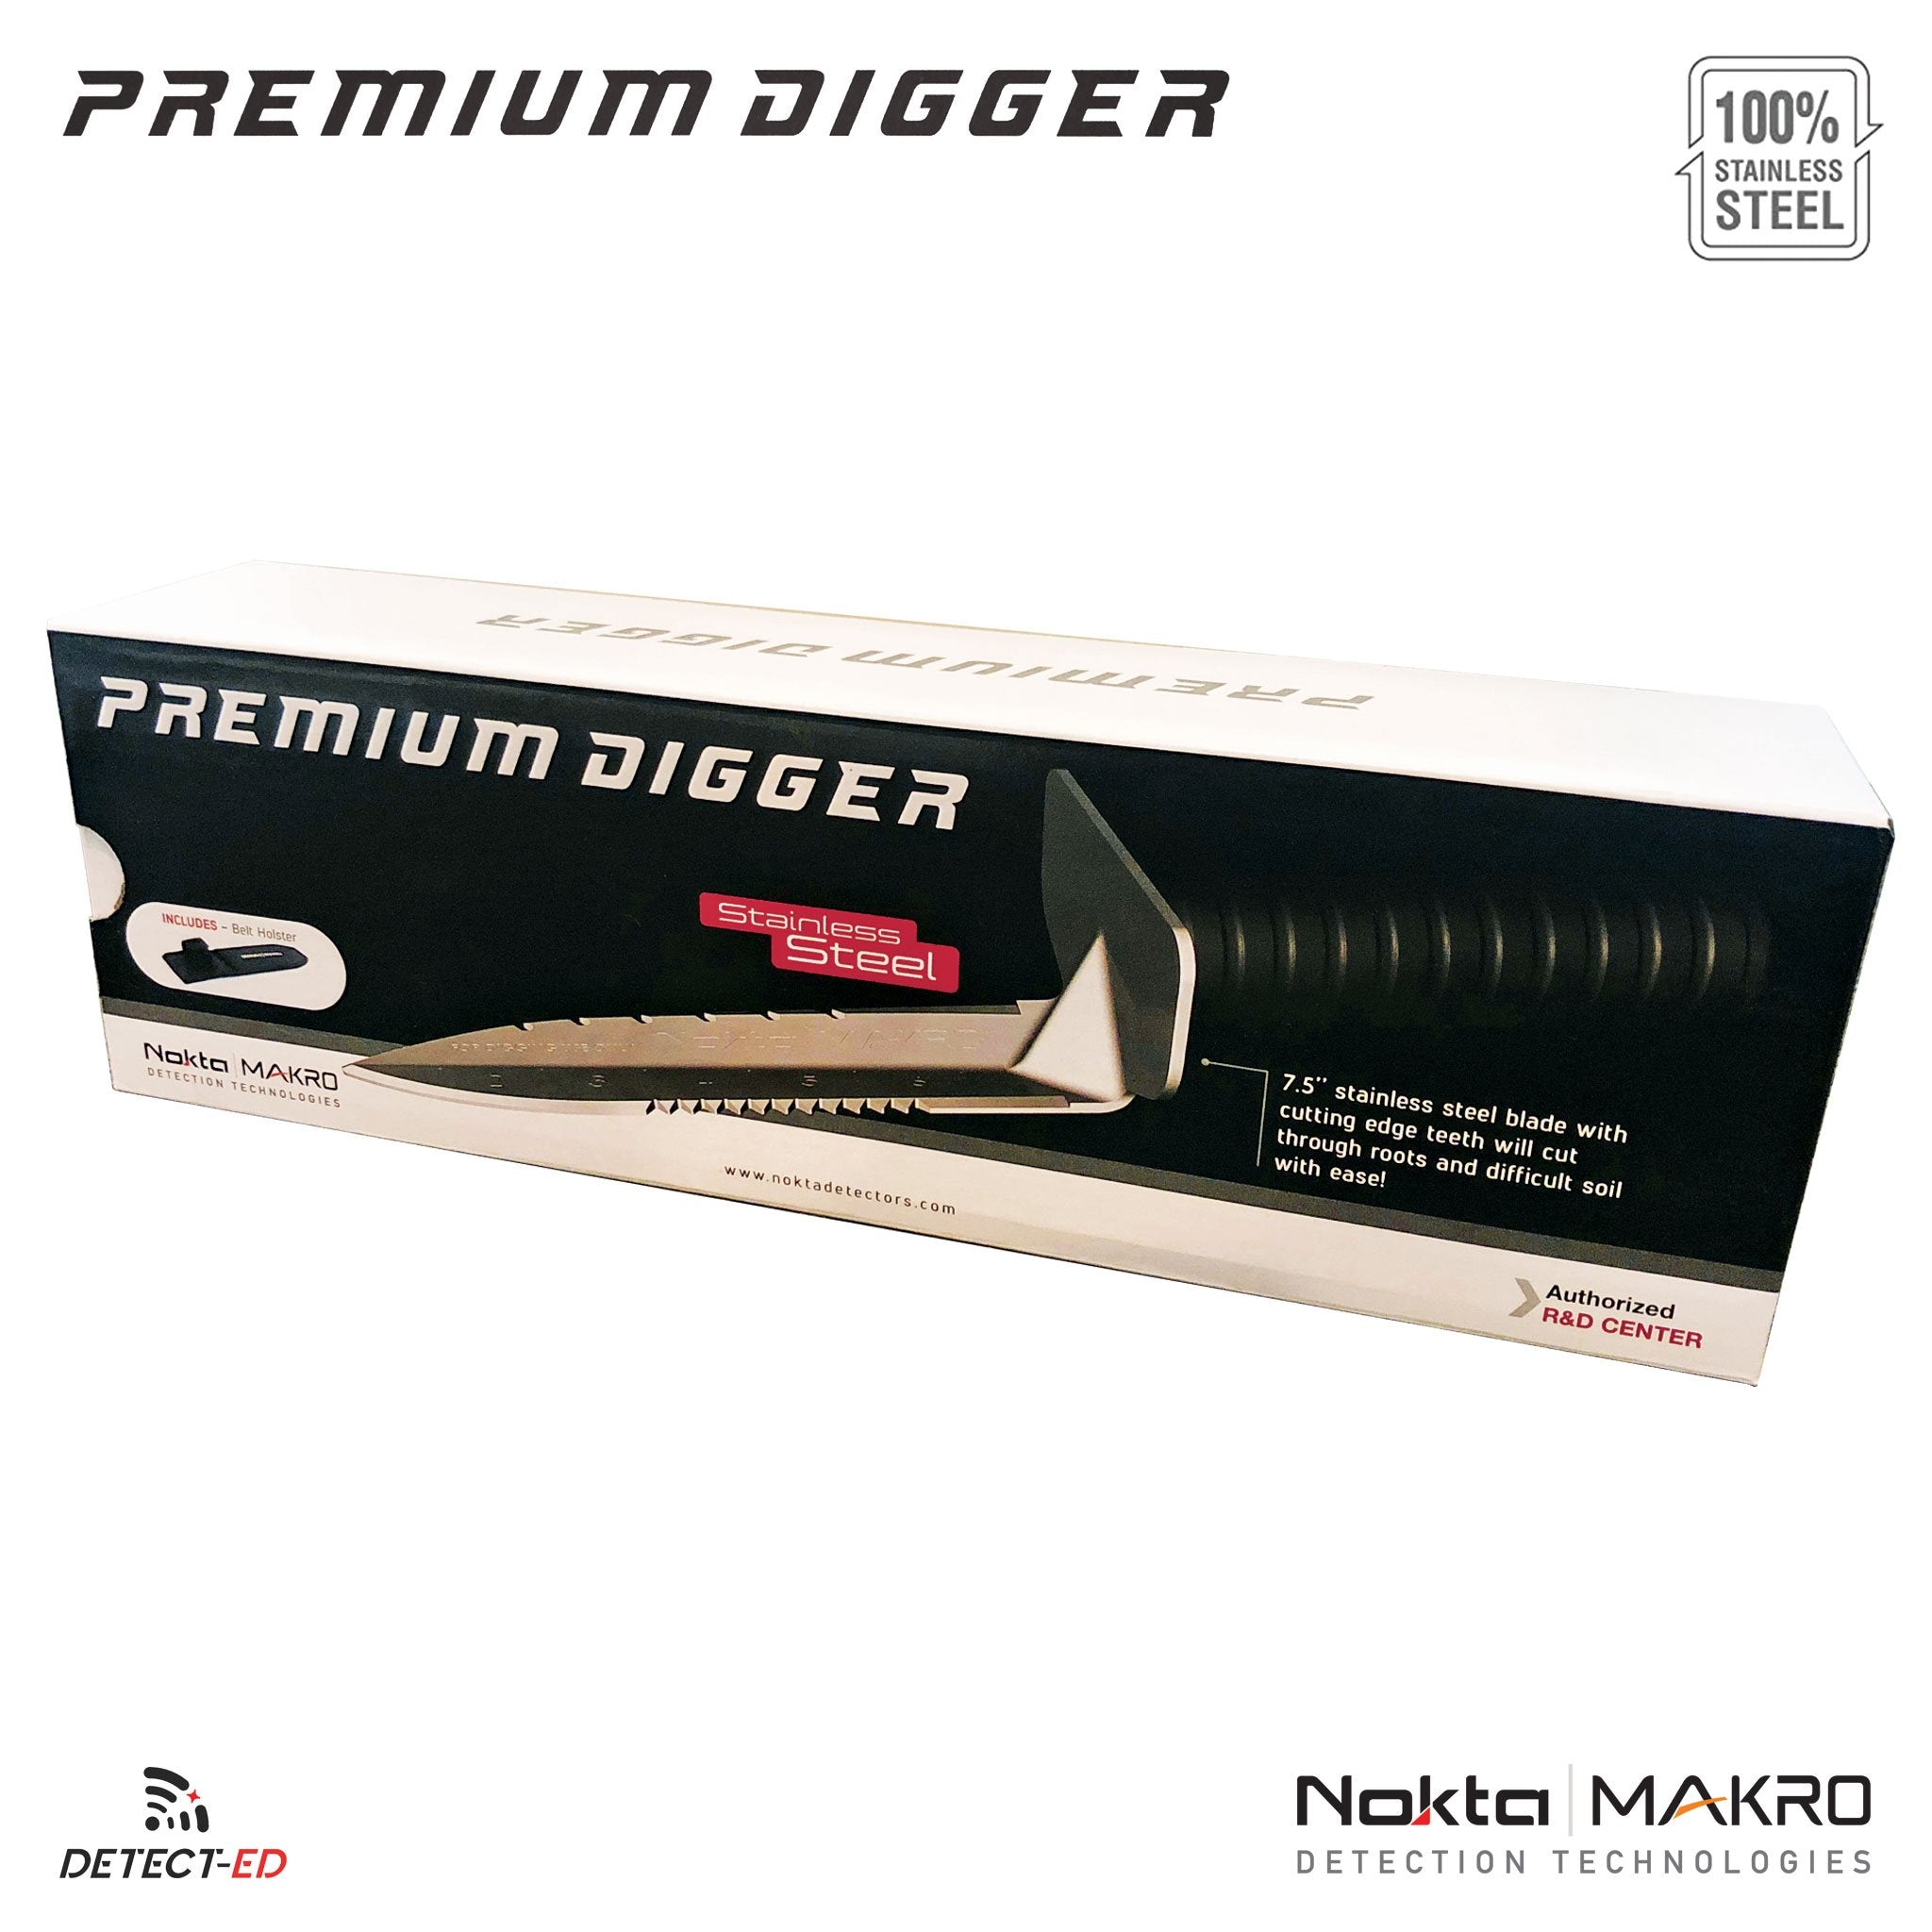 Detect-Ed Australia | Nokta Makro Premium Digger Box | Metal Detecting Gear